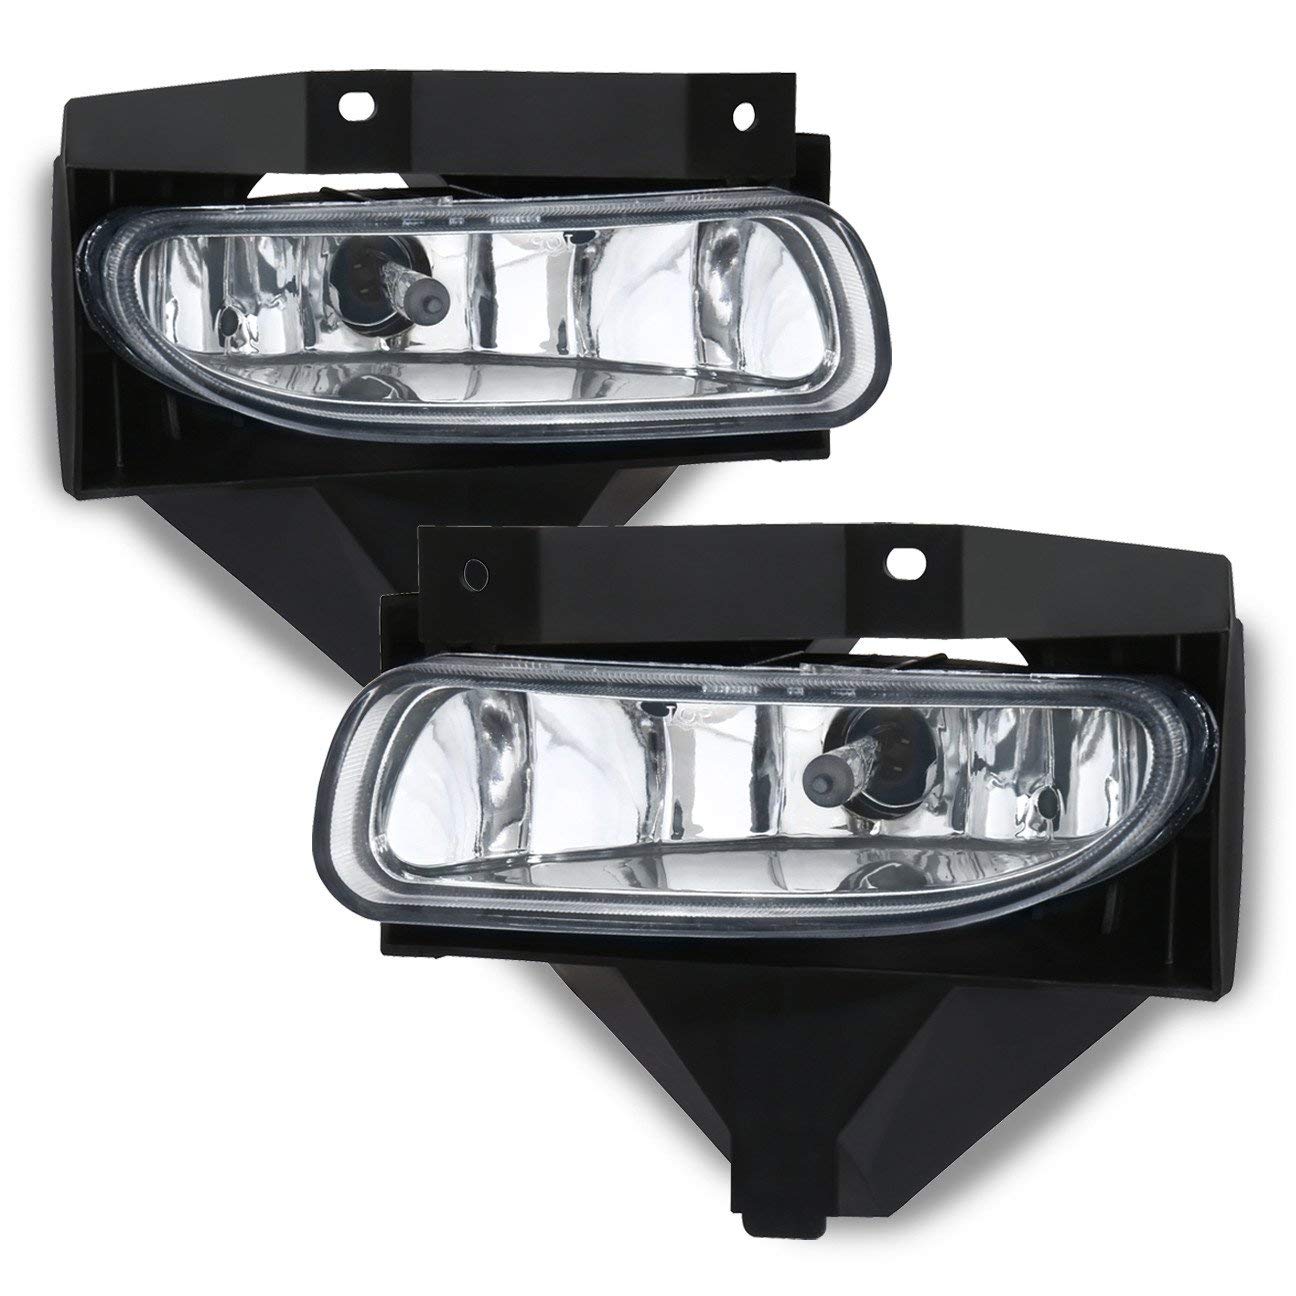 Lámparas de faro antiniebla delanteras cromadas de lente transparente para Ford Mustang 99-04